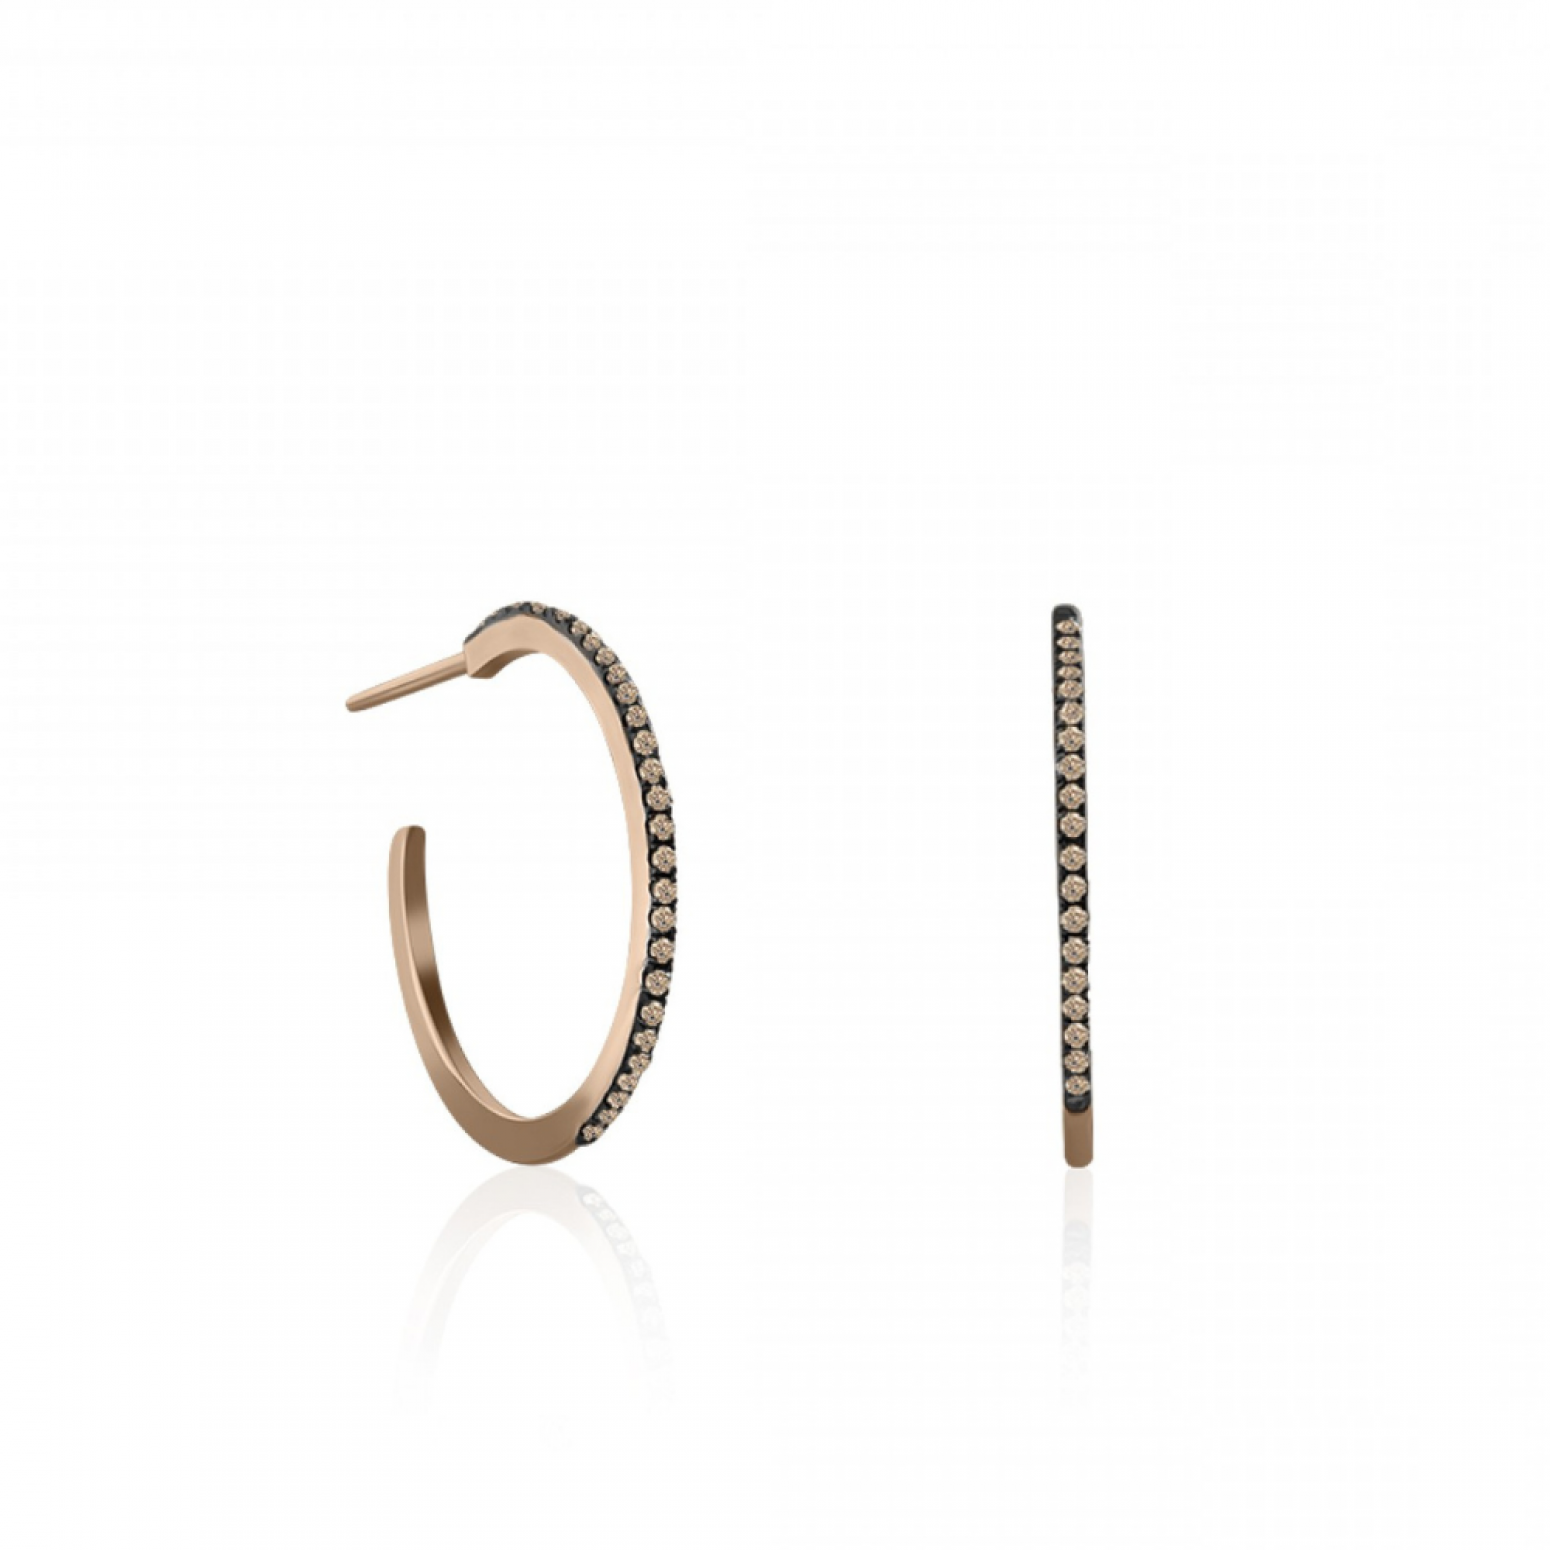 Hoop earrings 18K pink gold with brown diamonds 0.18ct, sk3676 EARRINGS Κοσμηματα - chrilia.gr